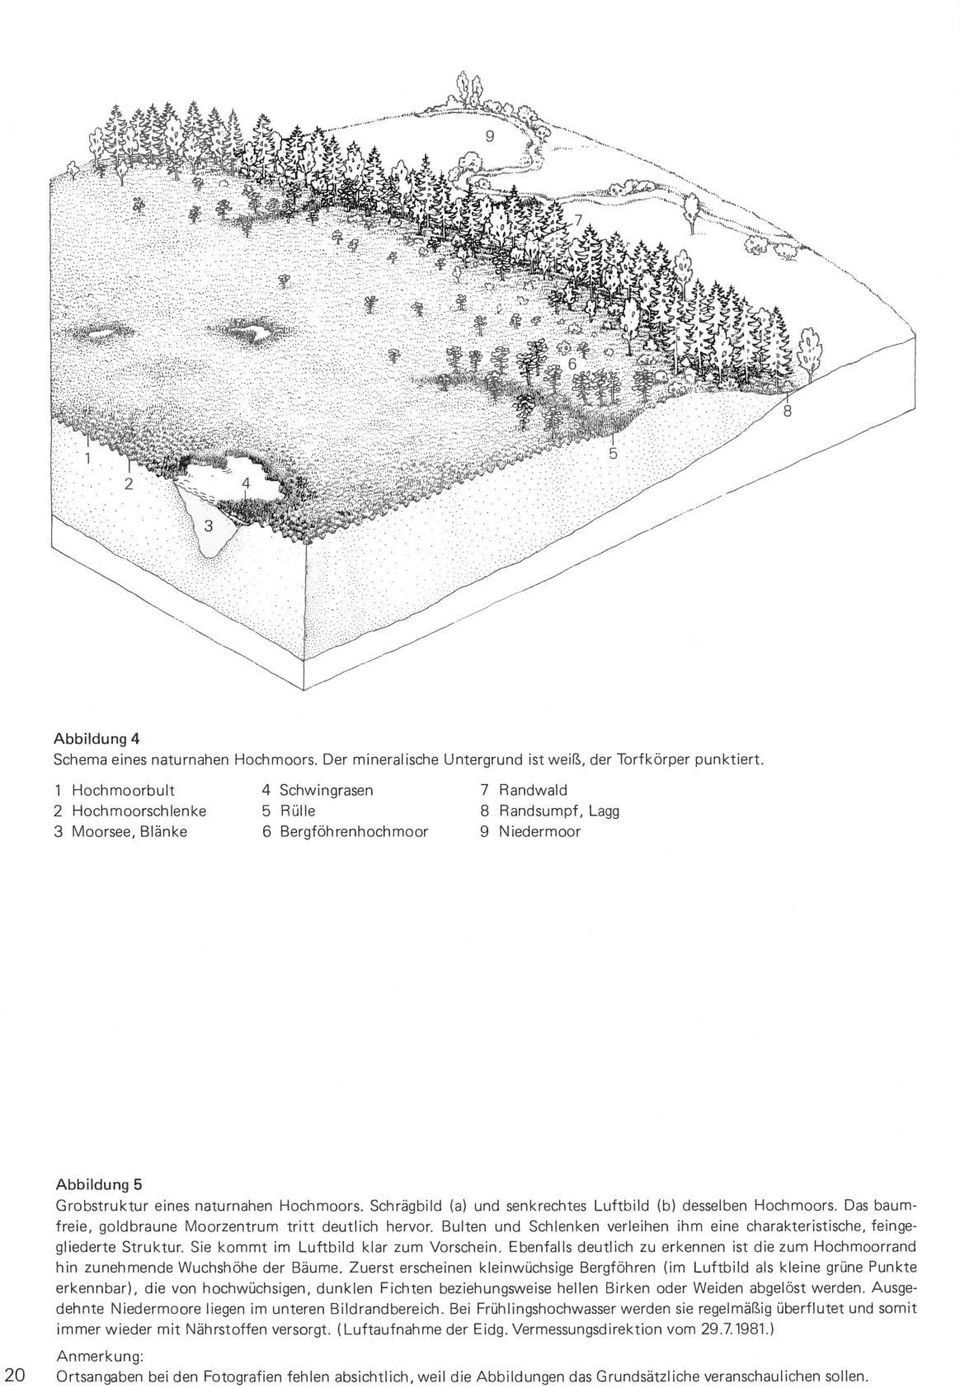 Schrägbild (a) und senkrechtes Luftbild (b) desselben Hochmoors. Das baumfreie, goldbraune Moorzentrum tritt deutlich hervor.